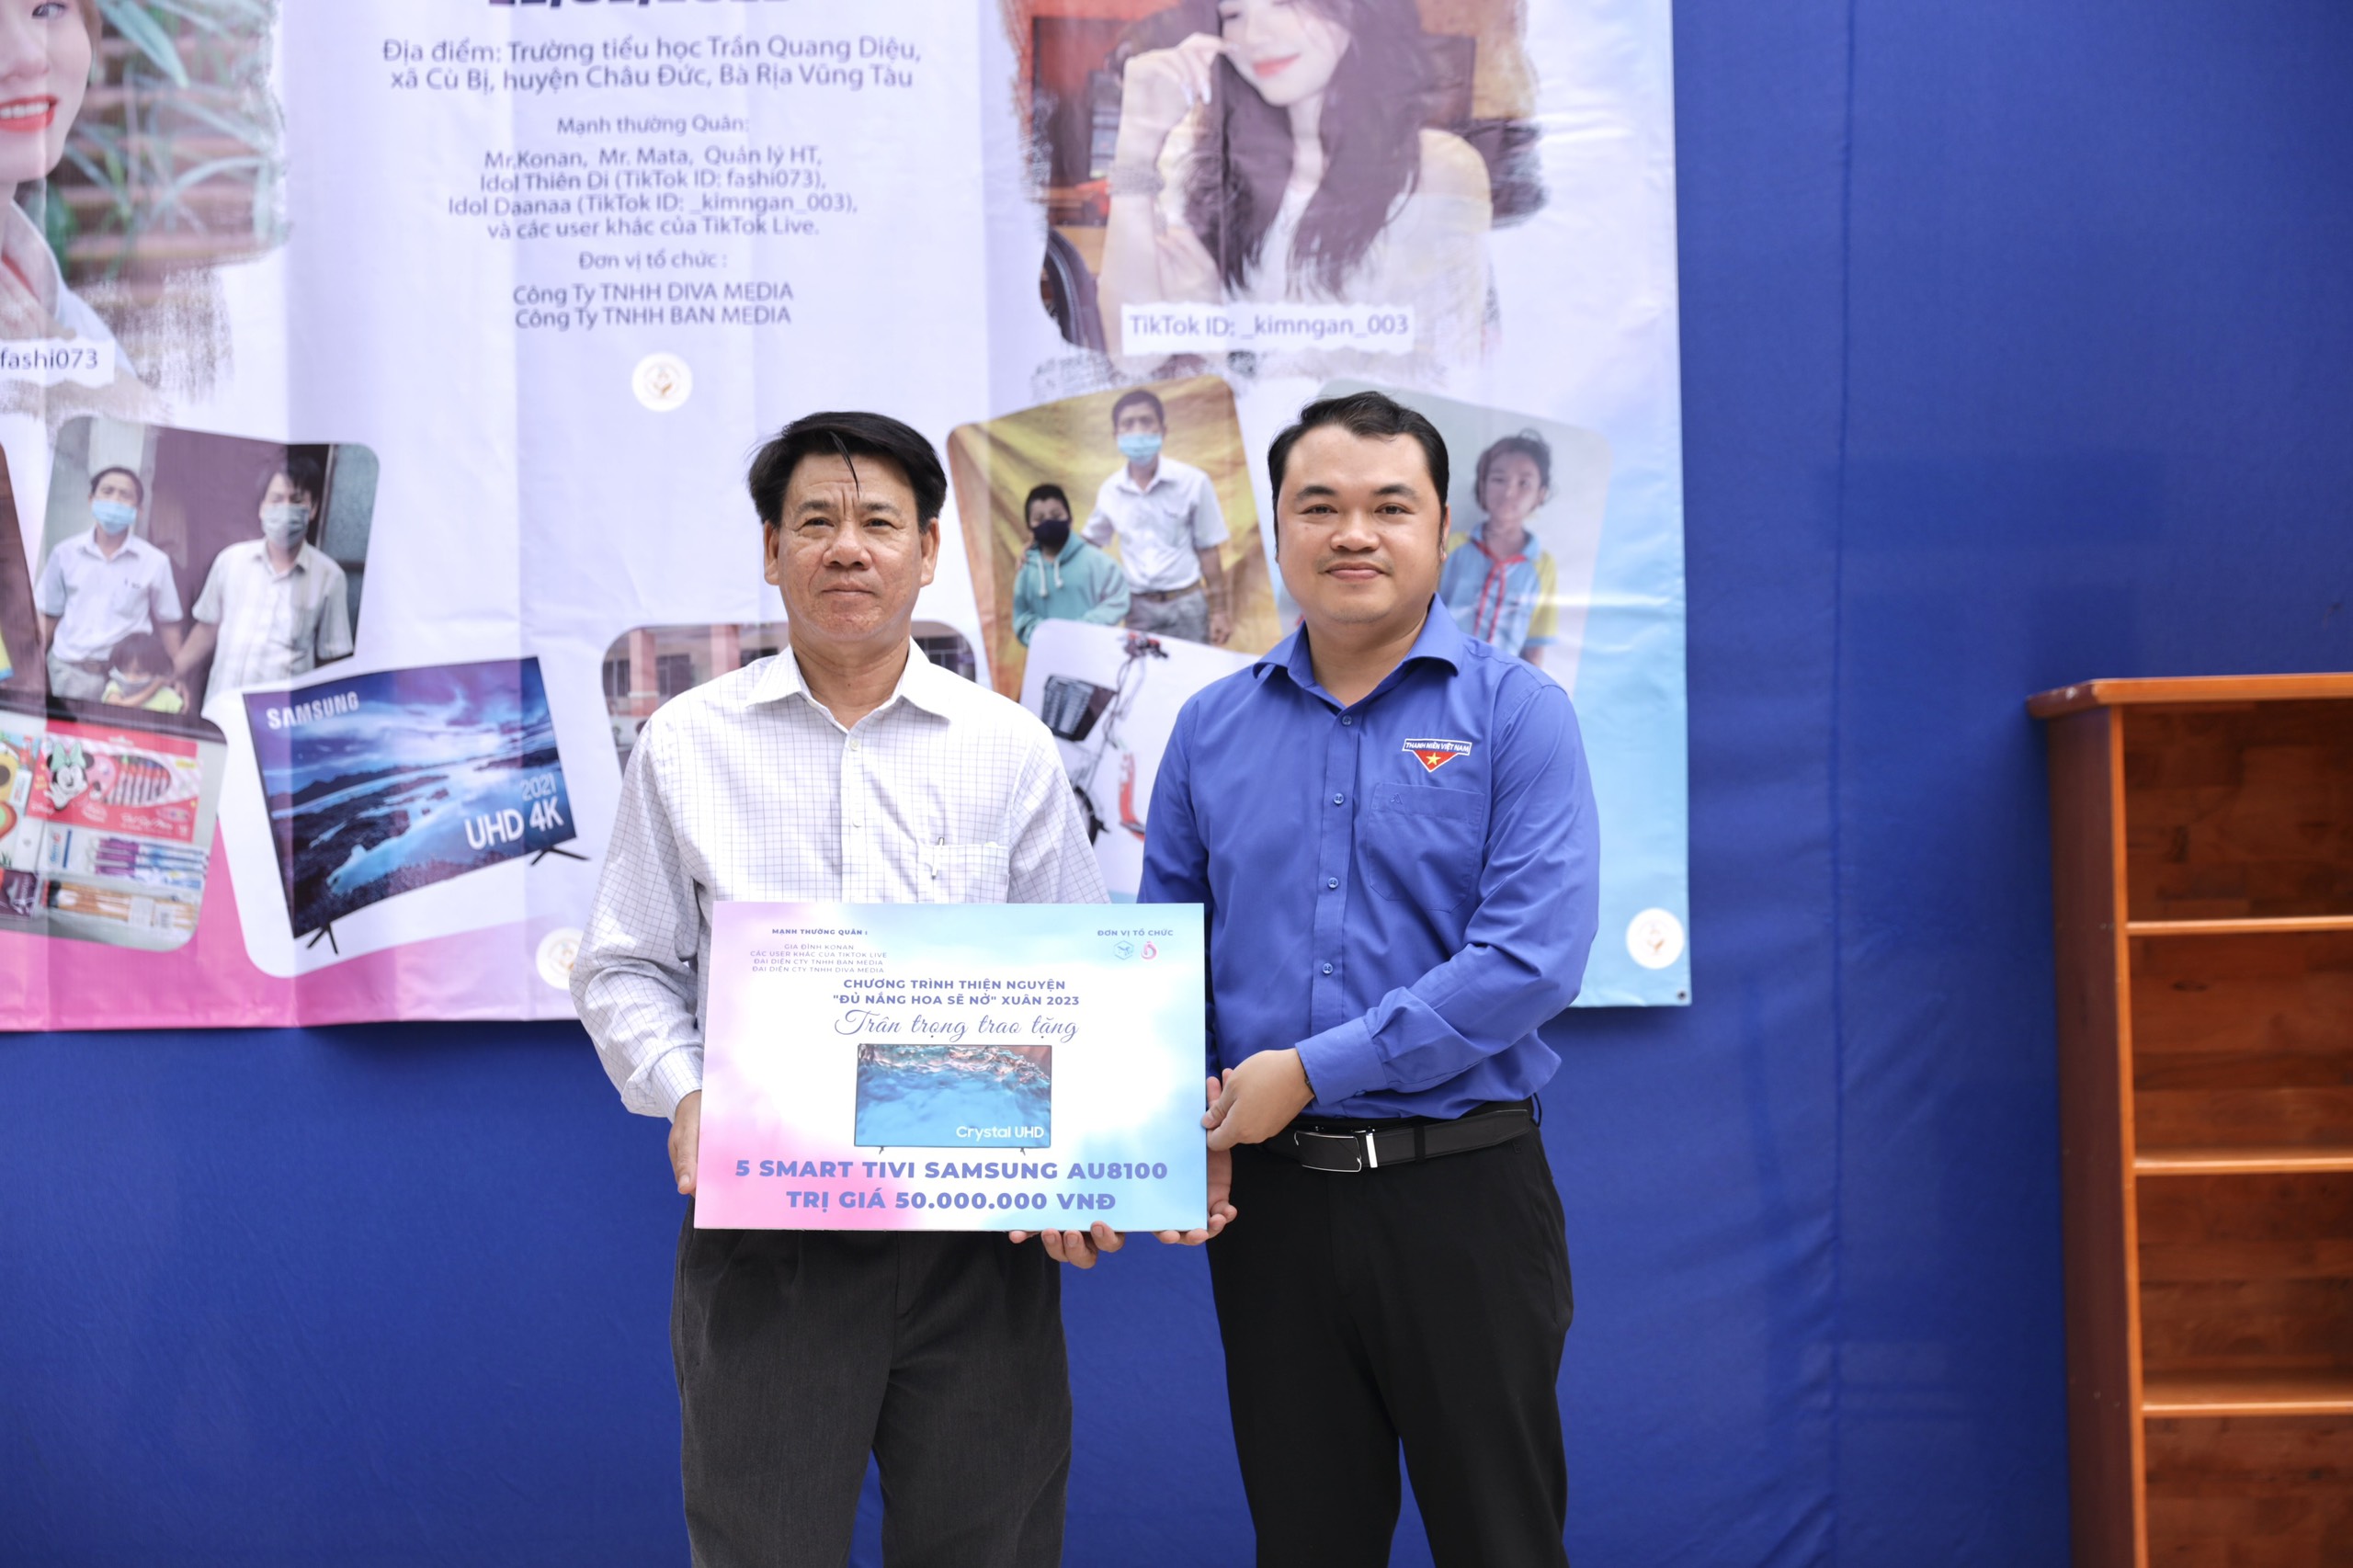 Thầy Mai Đức Anh, Hiệu trưởng Trường TH Trần Quang Diệu nhận bảng tượng trưng 5 Smart tivi Samsung AU8100 trị giá 50 triệu đồng từ Tỉnh Đoàn.